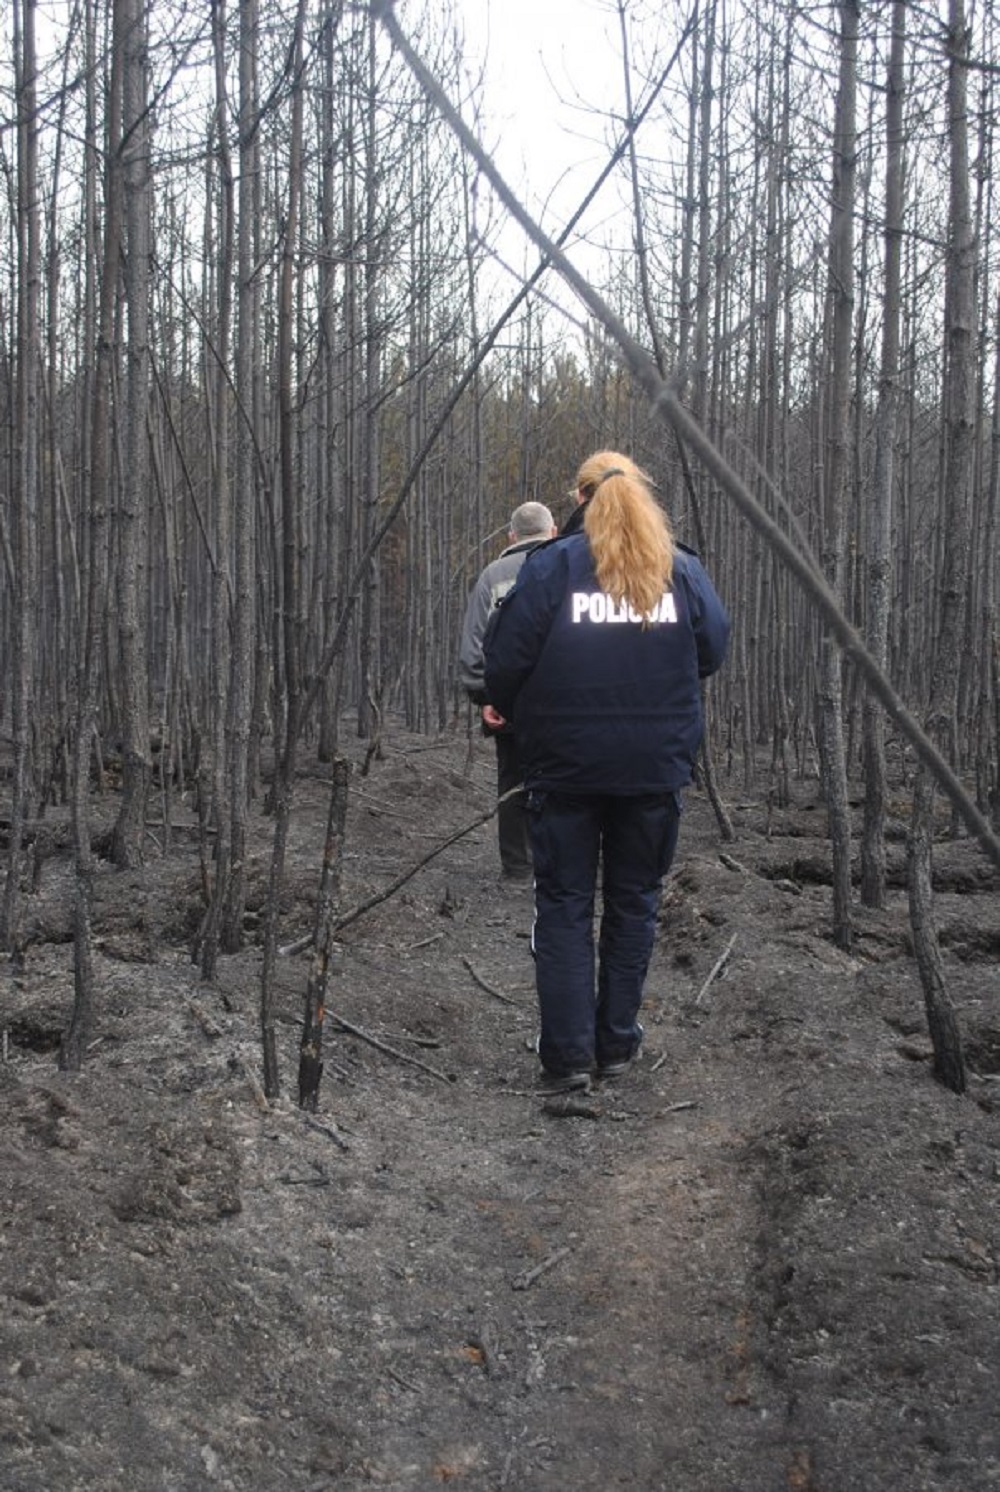  25-letni mieszkaniec powiatu mieleckiego ukradł drzewo z lasu, warte około tysiąc złotych - Zdjęcie główne